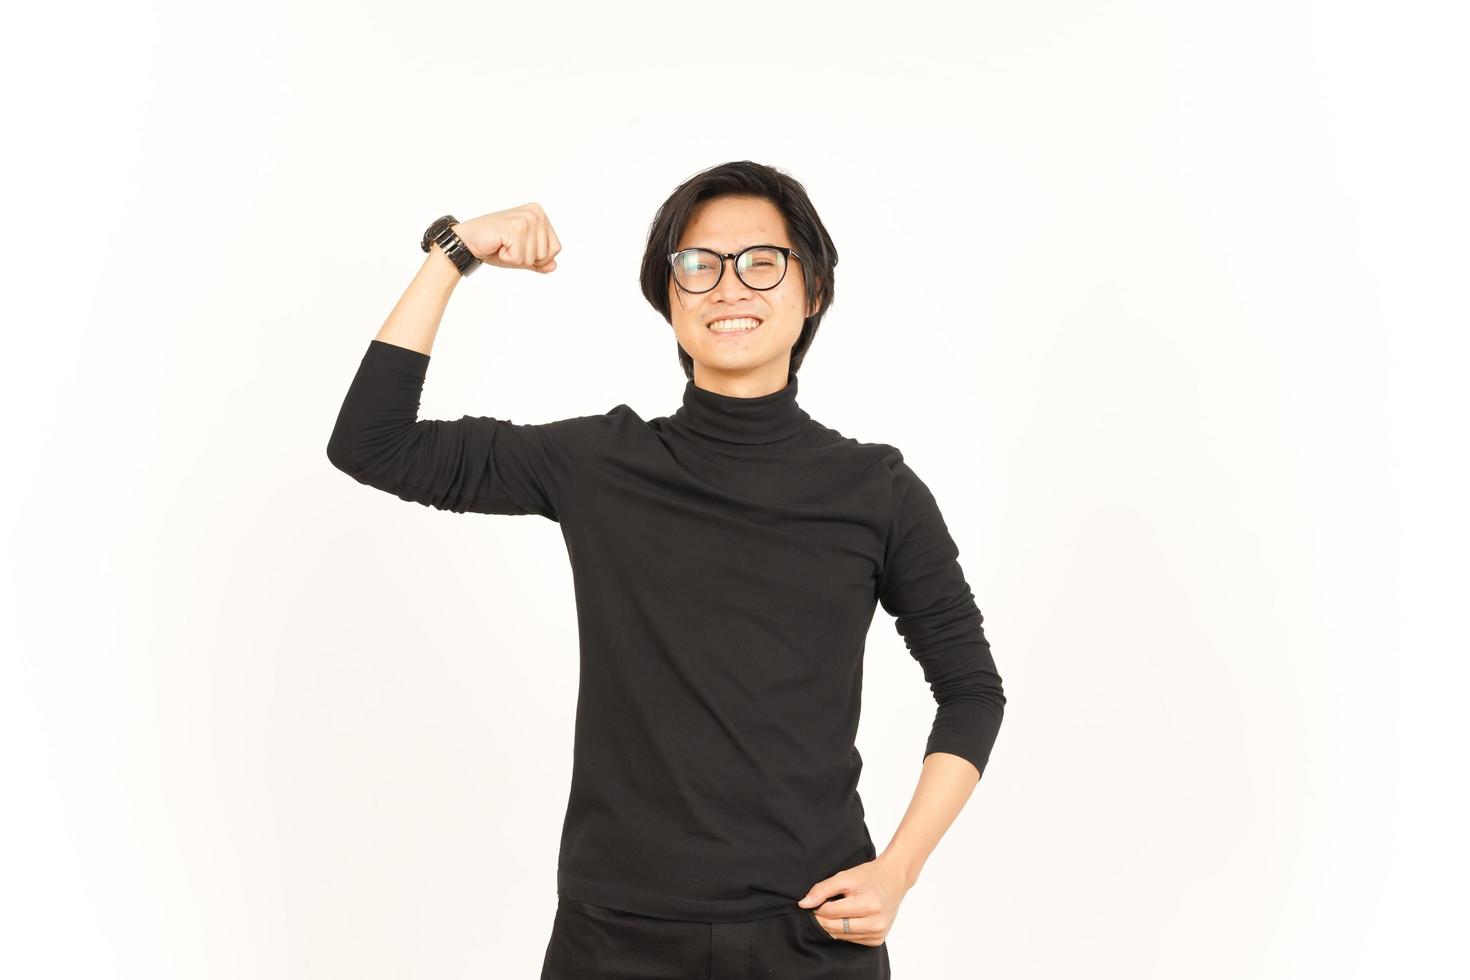 zeigen Stärke Arm von gut aussehend asiatisch Mann isoliert auf Weiß Hintergrund foto